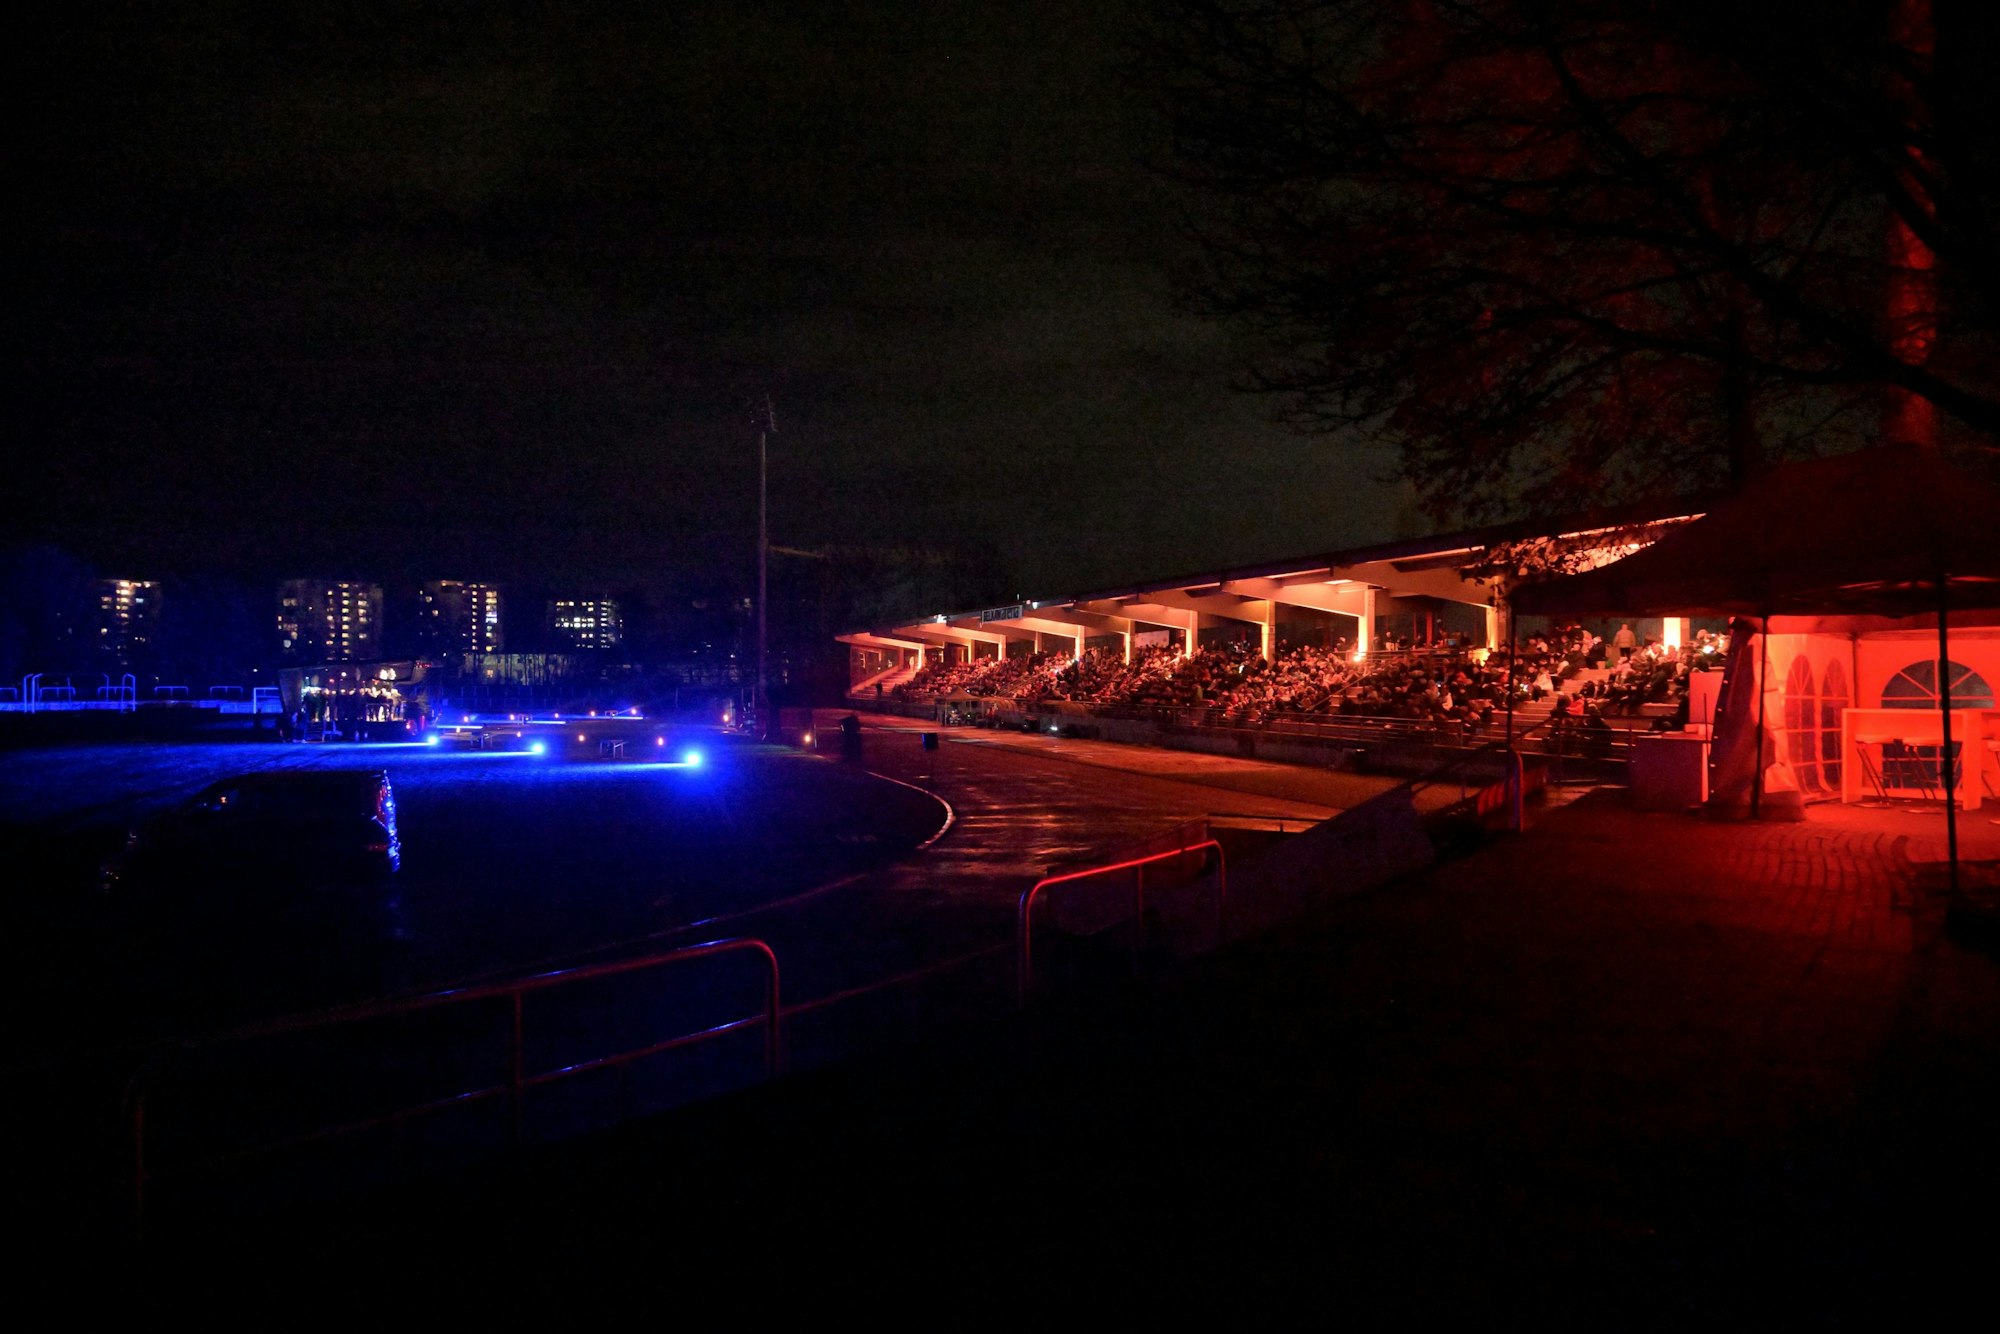 Die Tribüne des Gladbacher Stadions ist rot und blau im Dunkeln beleuchtet.